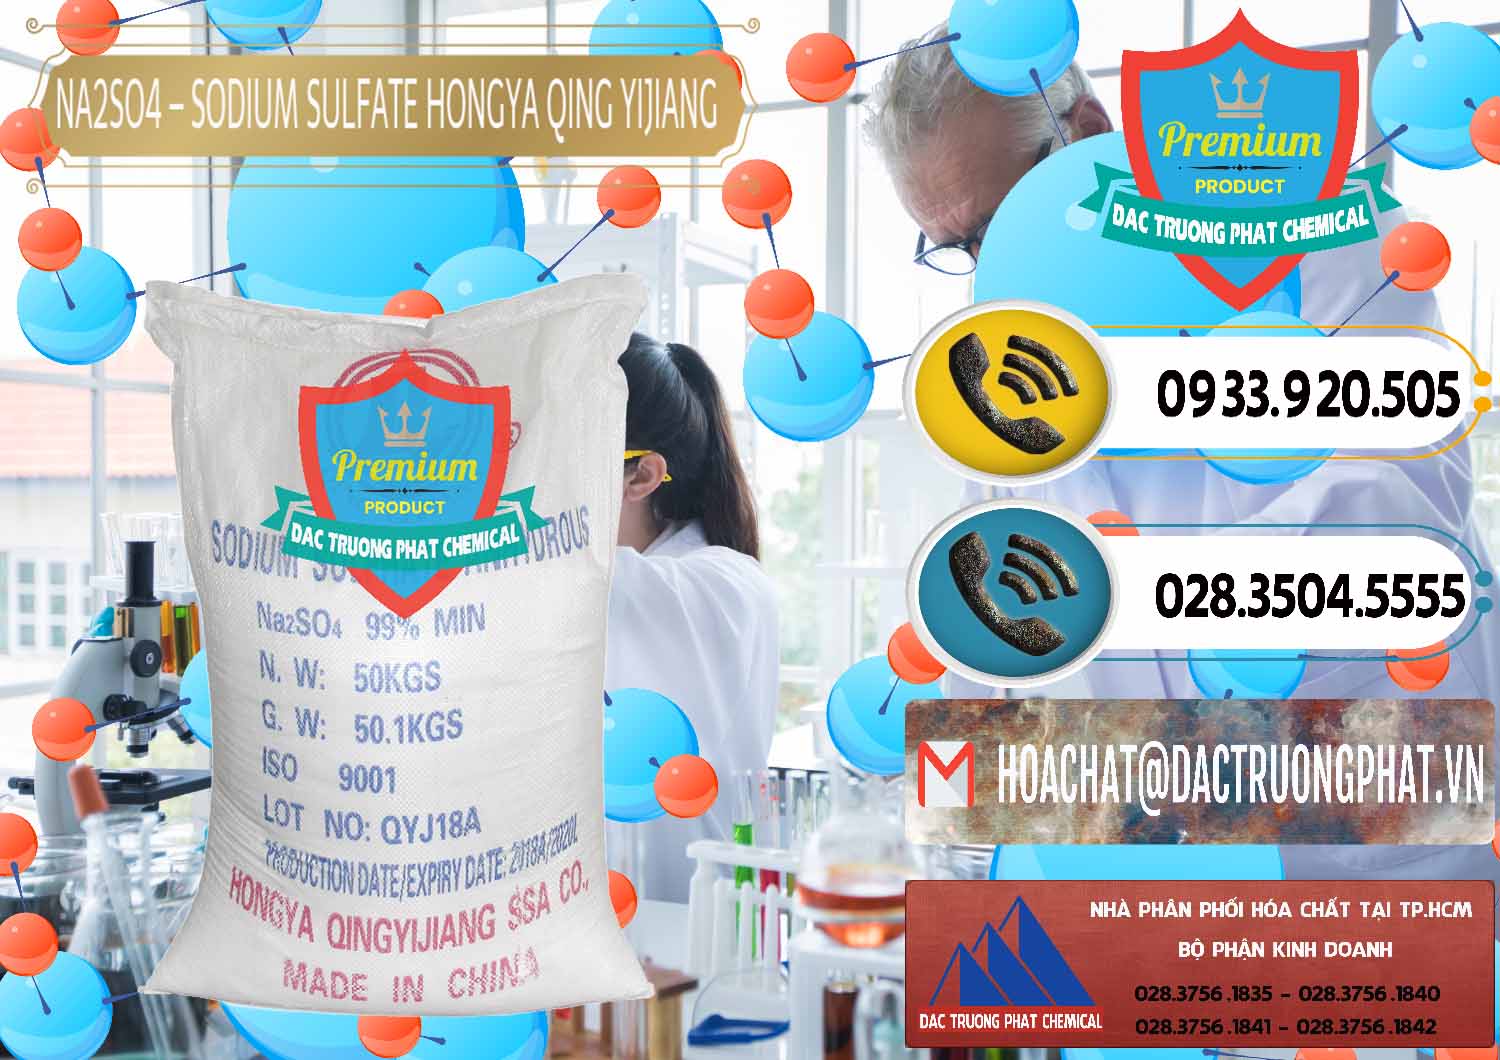 Đơn vị bán _ cung cấp Sodium Sulphate - Muối Sunfat Na2SO4 Logo Cánh Bườm Hongya Qing Yi Trung Quốc China - 0098 - Chuyên cung cấp - phân phối hóa chất tại TP.HCM - hoachatdetnhuom.vn